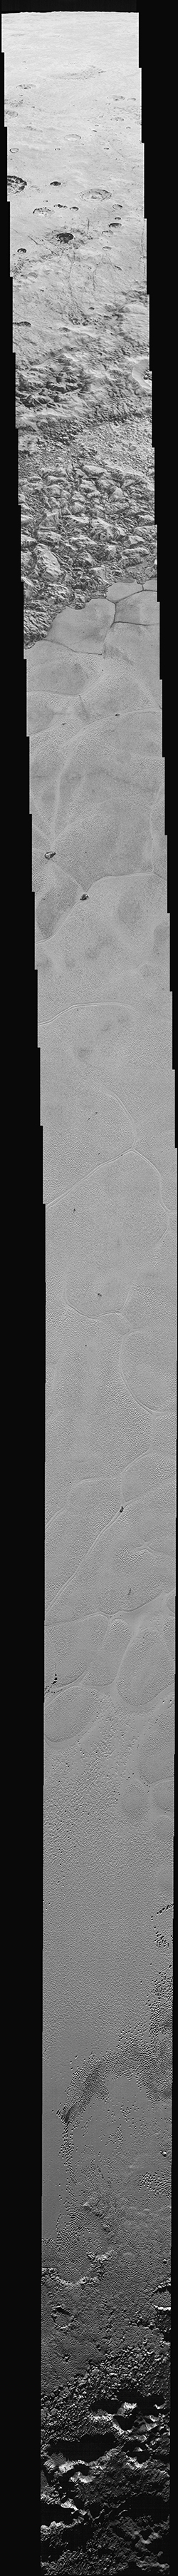 Самое детальное фото поверхности Плутона